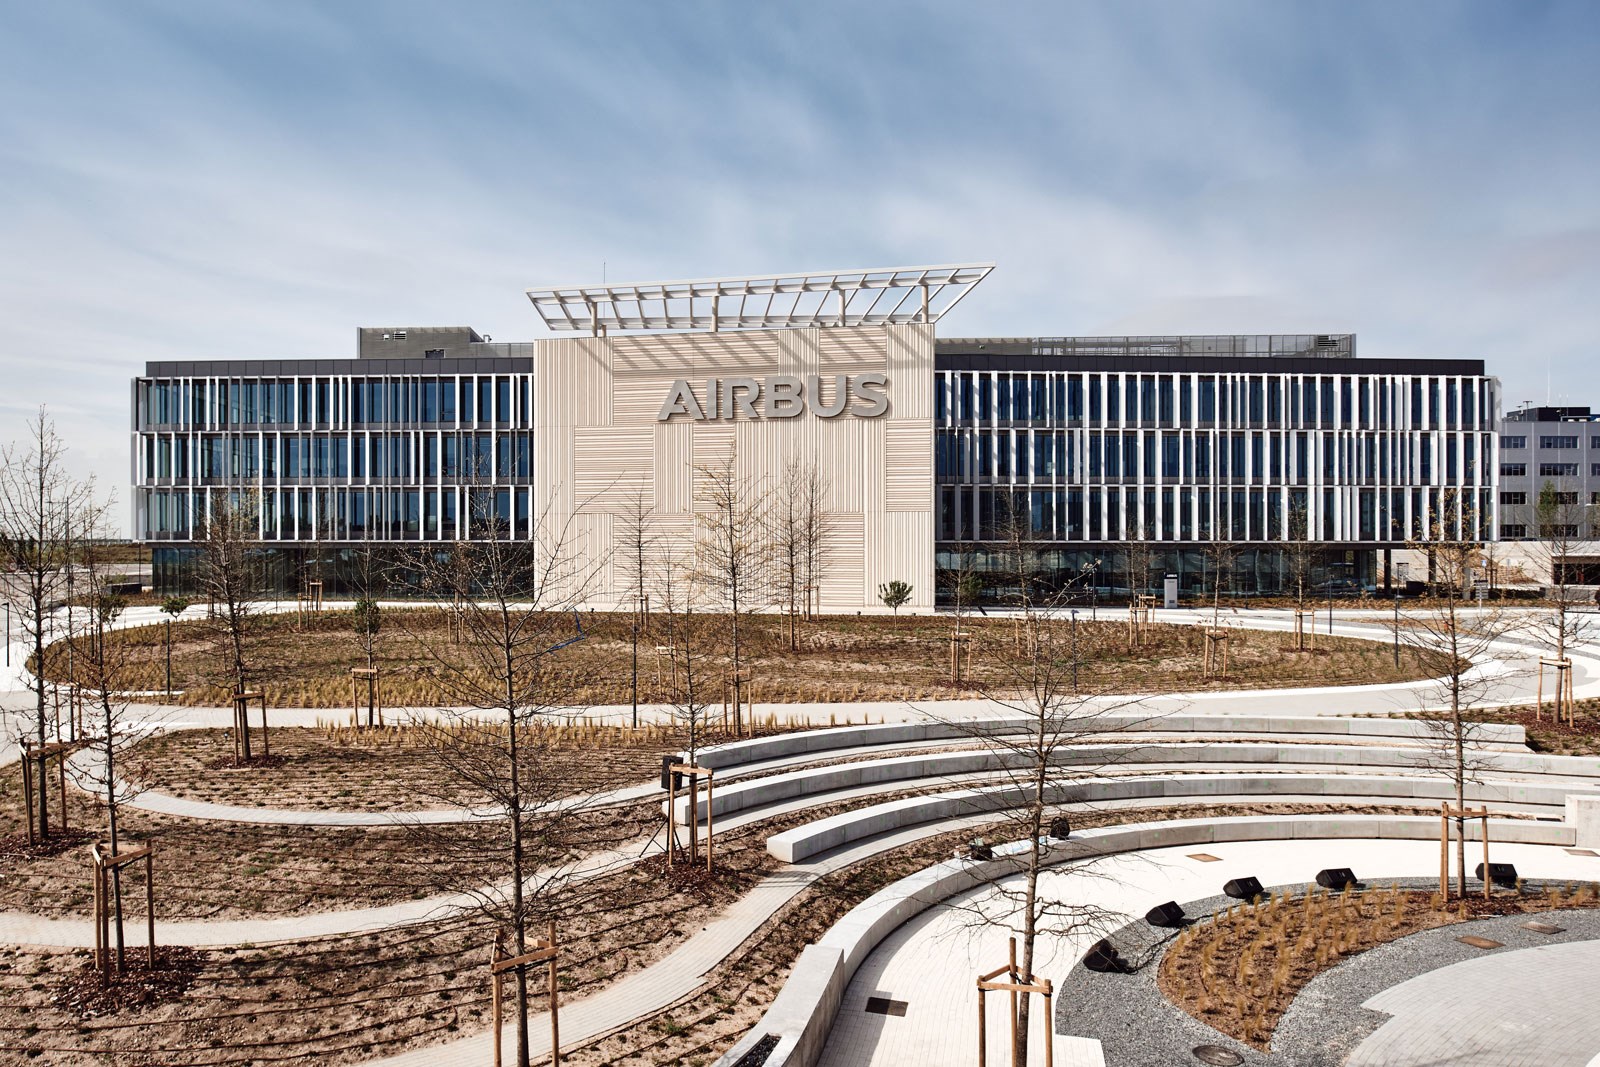 Airbus “Futura” Campus in Madrid